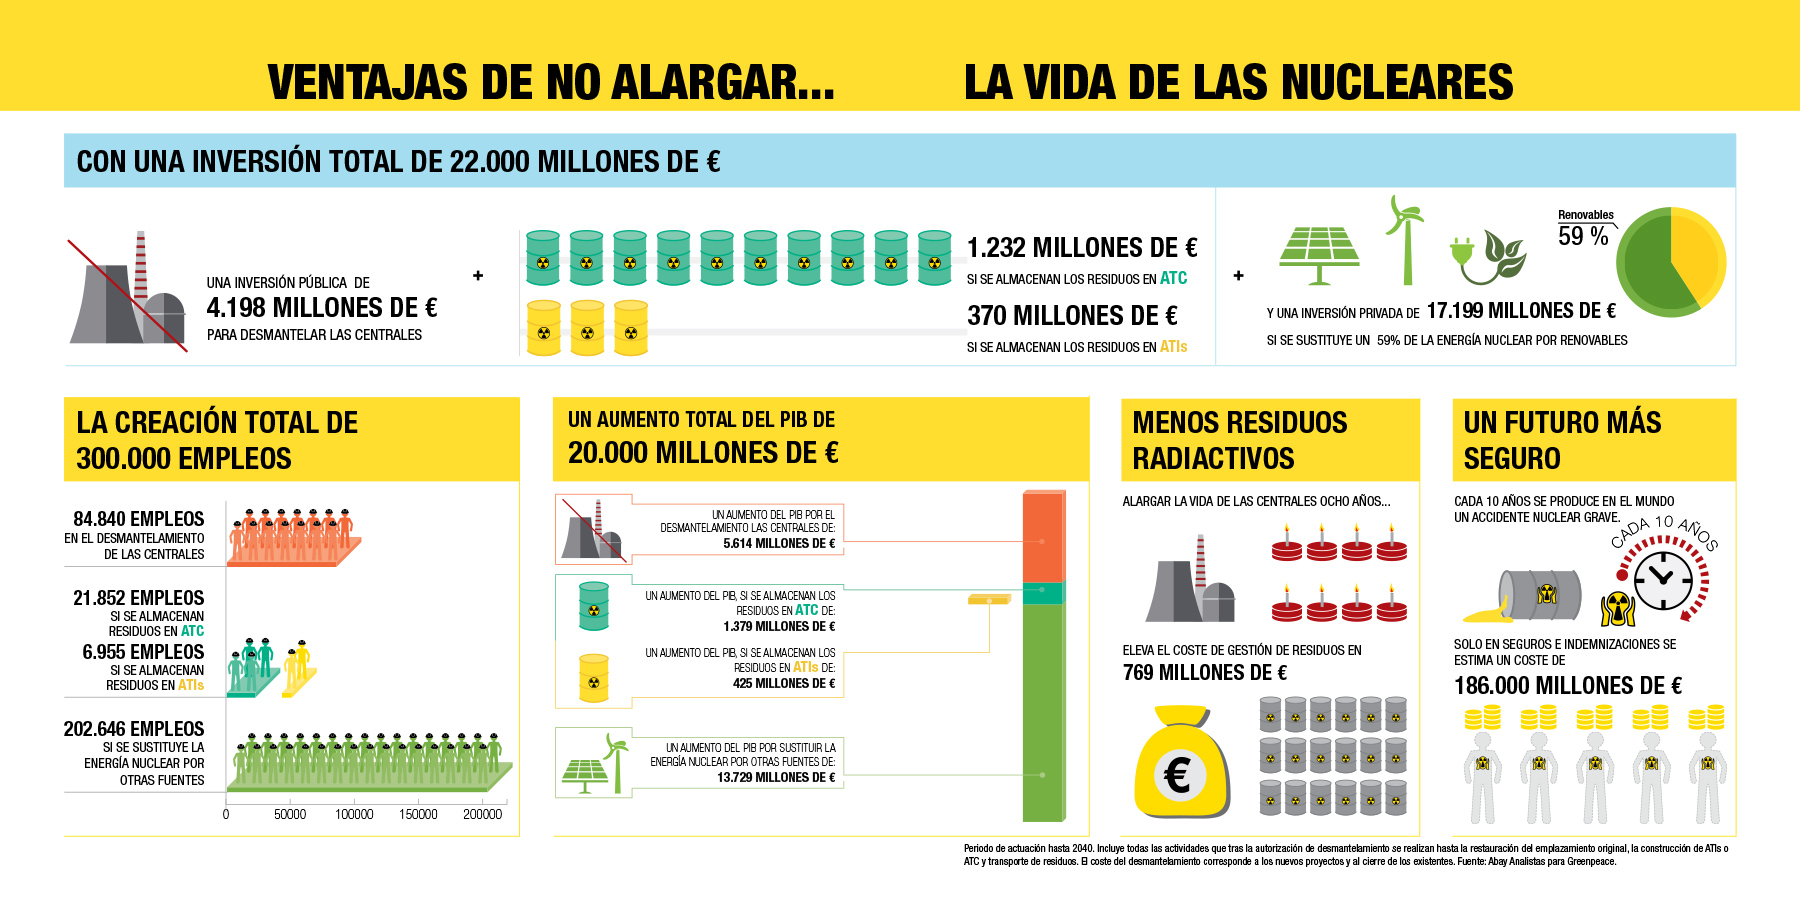 El inevitable cierre de las centrales nucleares españolas: una oportunidad económica y social-4